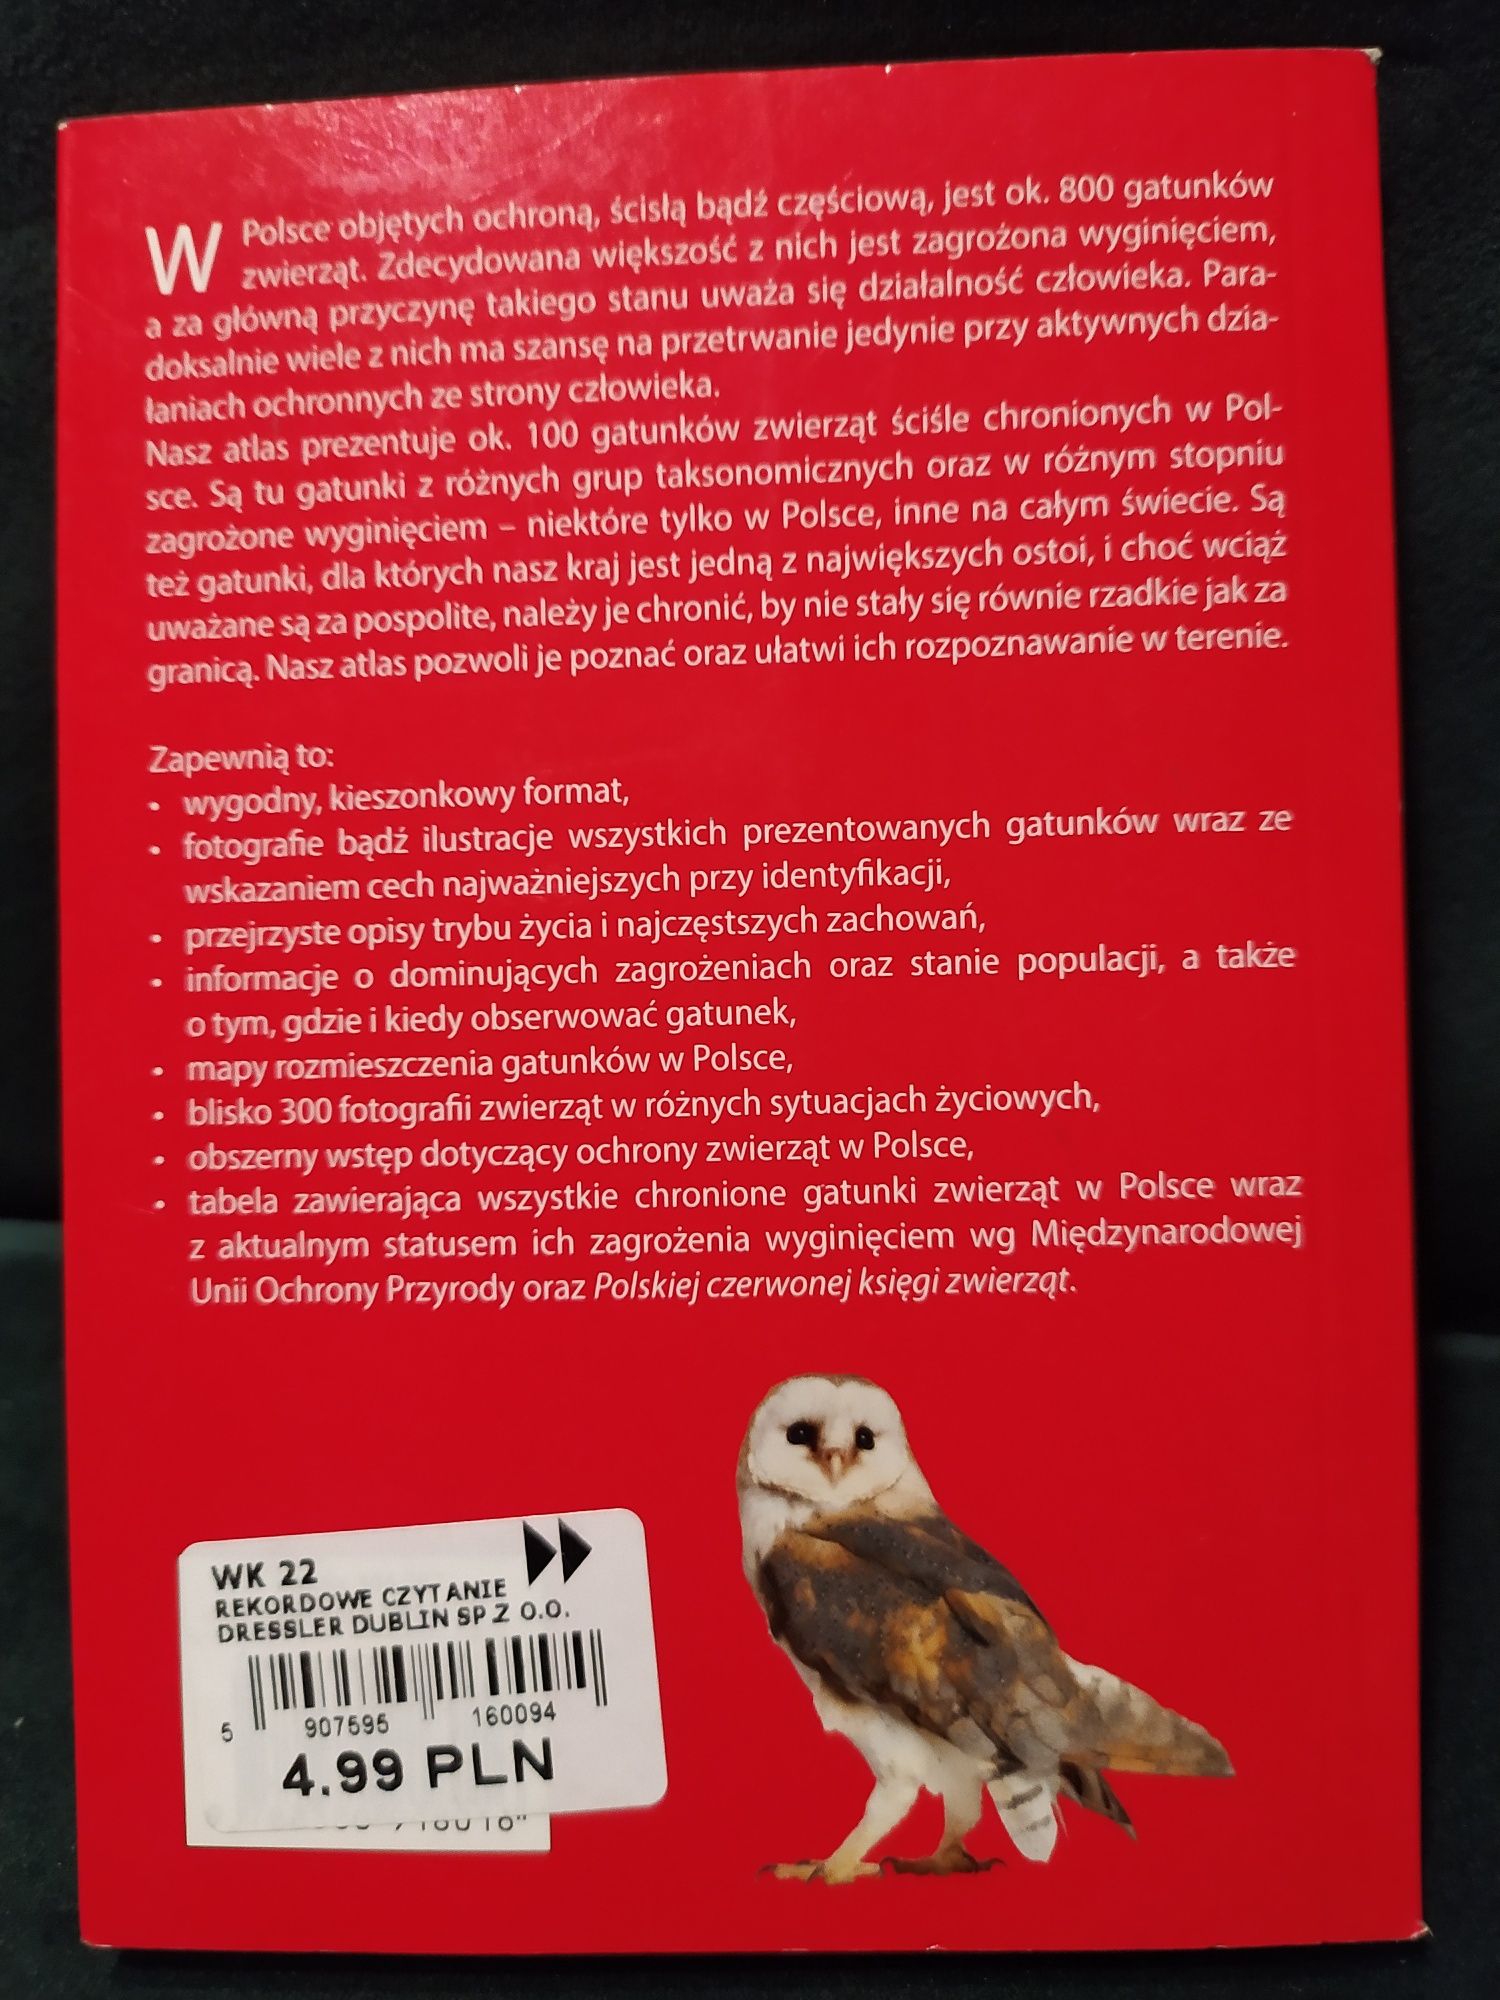 Atlas zwierząt chronionych w Polsce - kieszonkowy przewodnik